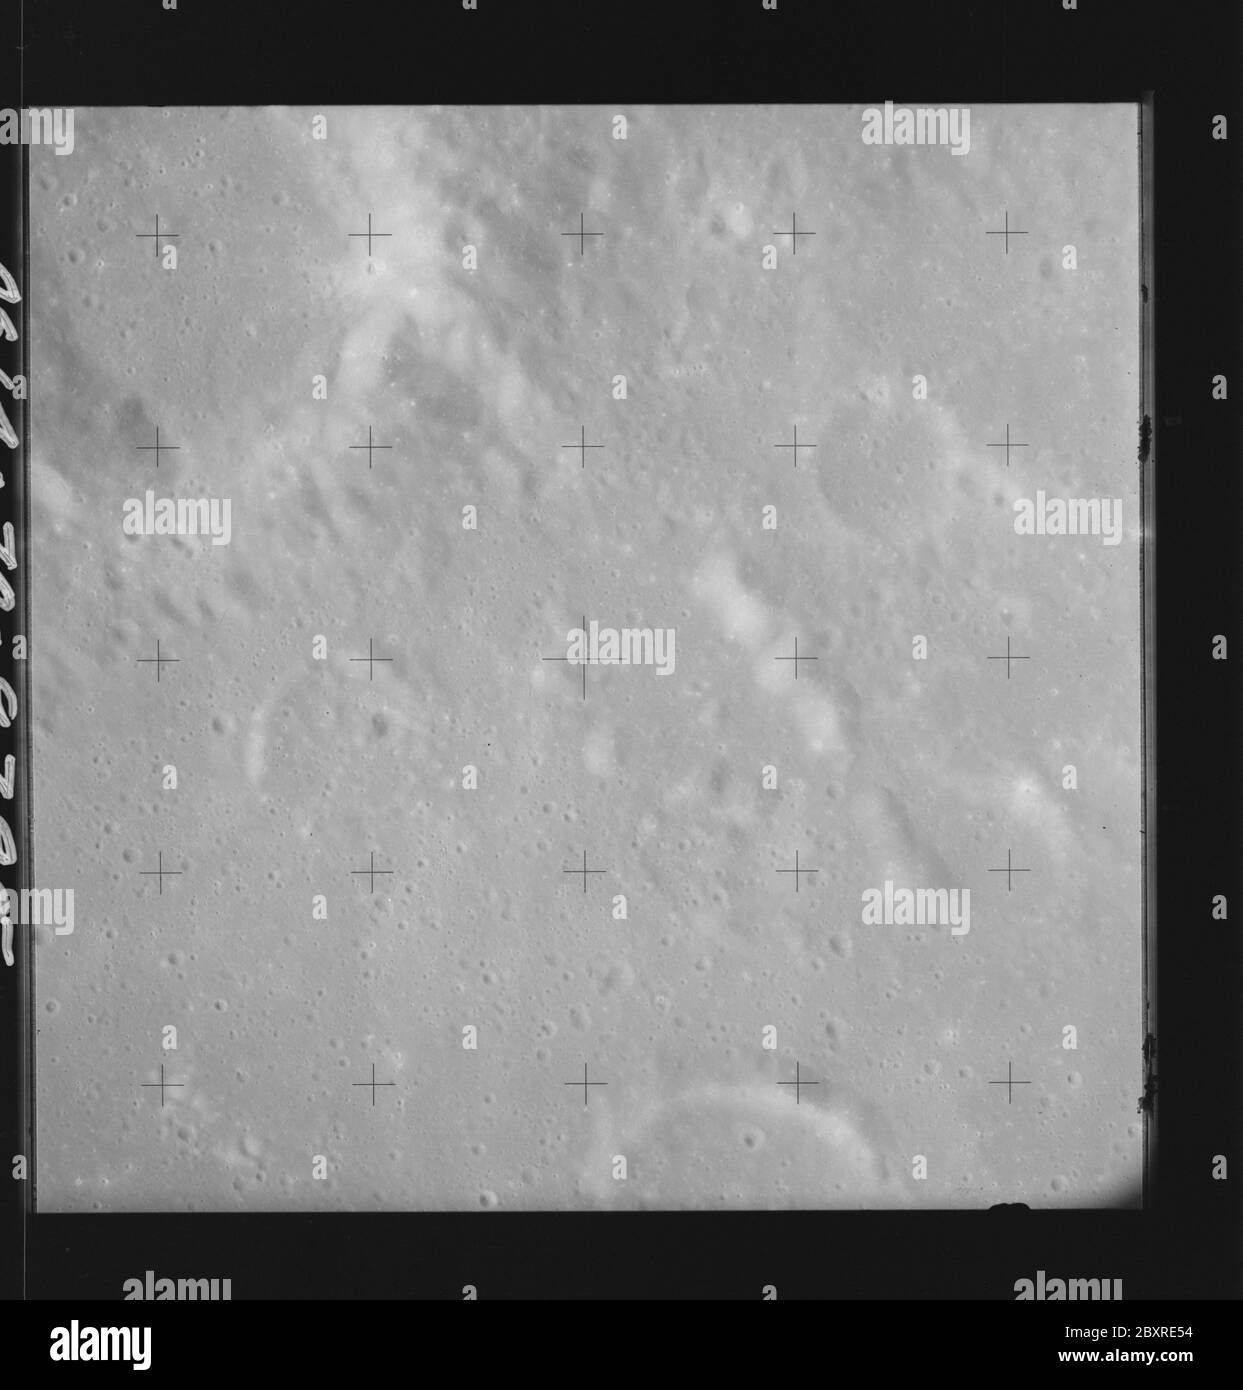 AS14-70-9795 - Apollo 14 - image de la mission Apollo 14 - vue des cratères Hipparchus et Halley.; portée et contenu: La base de données originale décrit ceci comme: Description: Vue des cratères Hipparchus et Halley. Des images ont été prises sur la Révolution 26 de la mission Apollo 14. Le magazine original a été étiqueté Q, le type de film était 3400BW (Panatomic-X, noir et blanc), objectif de 80 mm avec une élévation du soleil de 45 degrés. L'échelle de photo approximative était de 1:1,380,000. La principale point de latence était 7.0S par Longitude 5.0E,avec une inclinaison verticale de la caméra. Descripteurs : vol Apollo 14, Lune (planète) catégories : OBS lunaire Banque D'Images